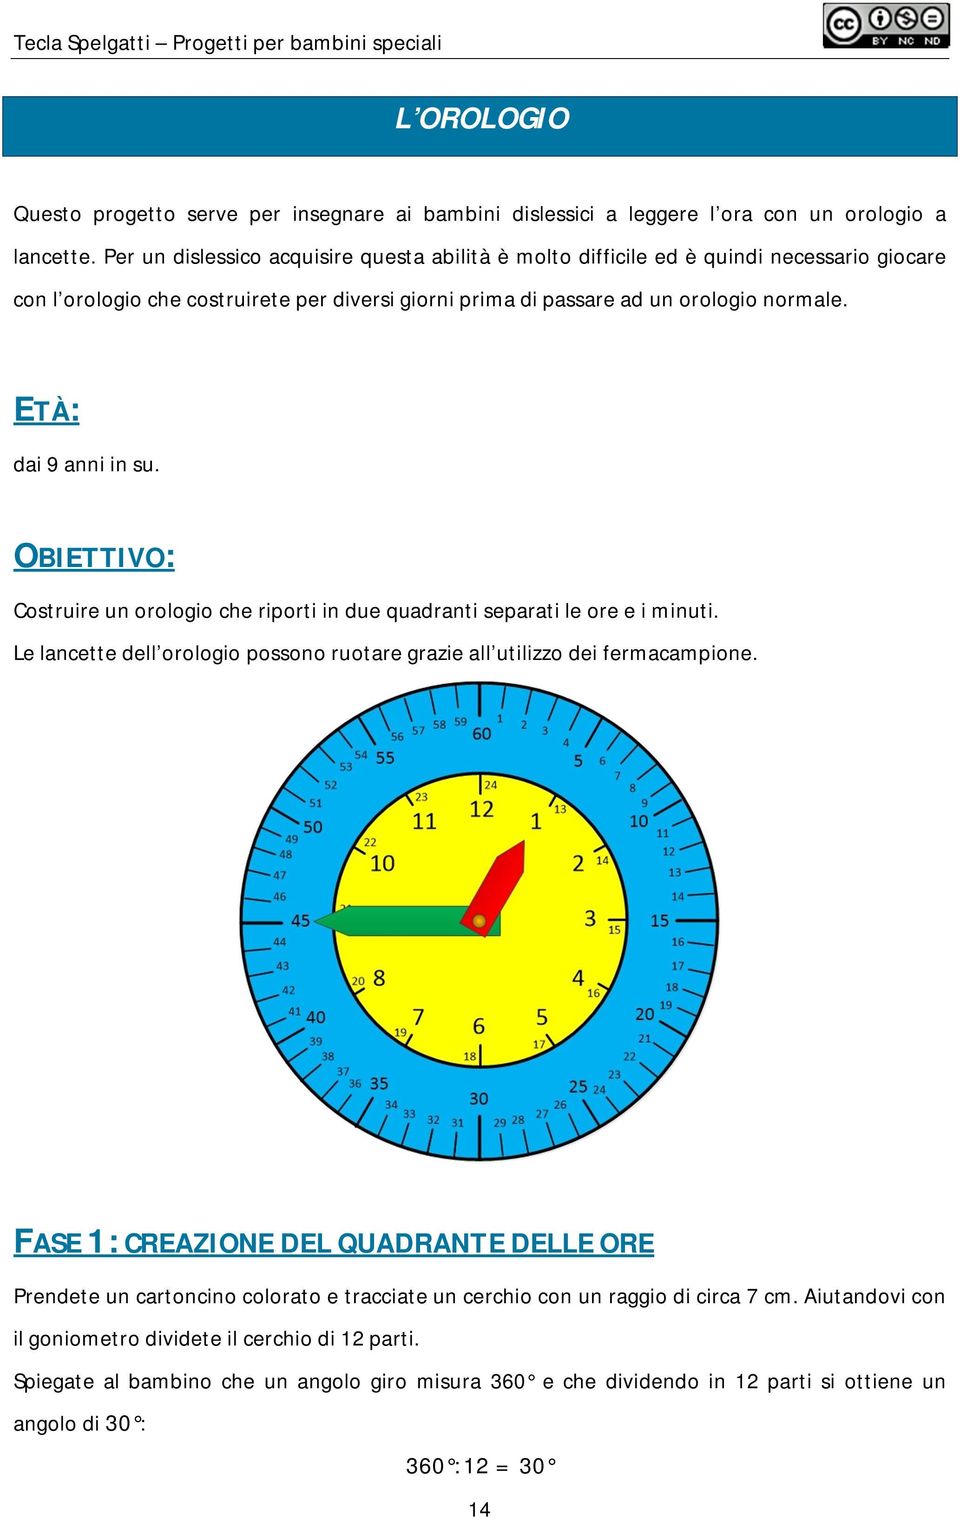 ETÀ: dai 9 anni in su. OBIETTIVO: Costruire un orologio che riporti in due quadranti separati le ore e i minuti. Le lancette dell orologio possono ruotare grazie all utilizzo dei fermacampione.